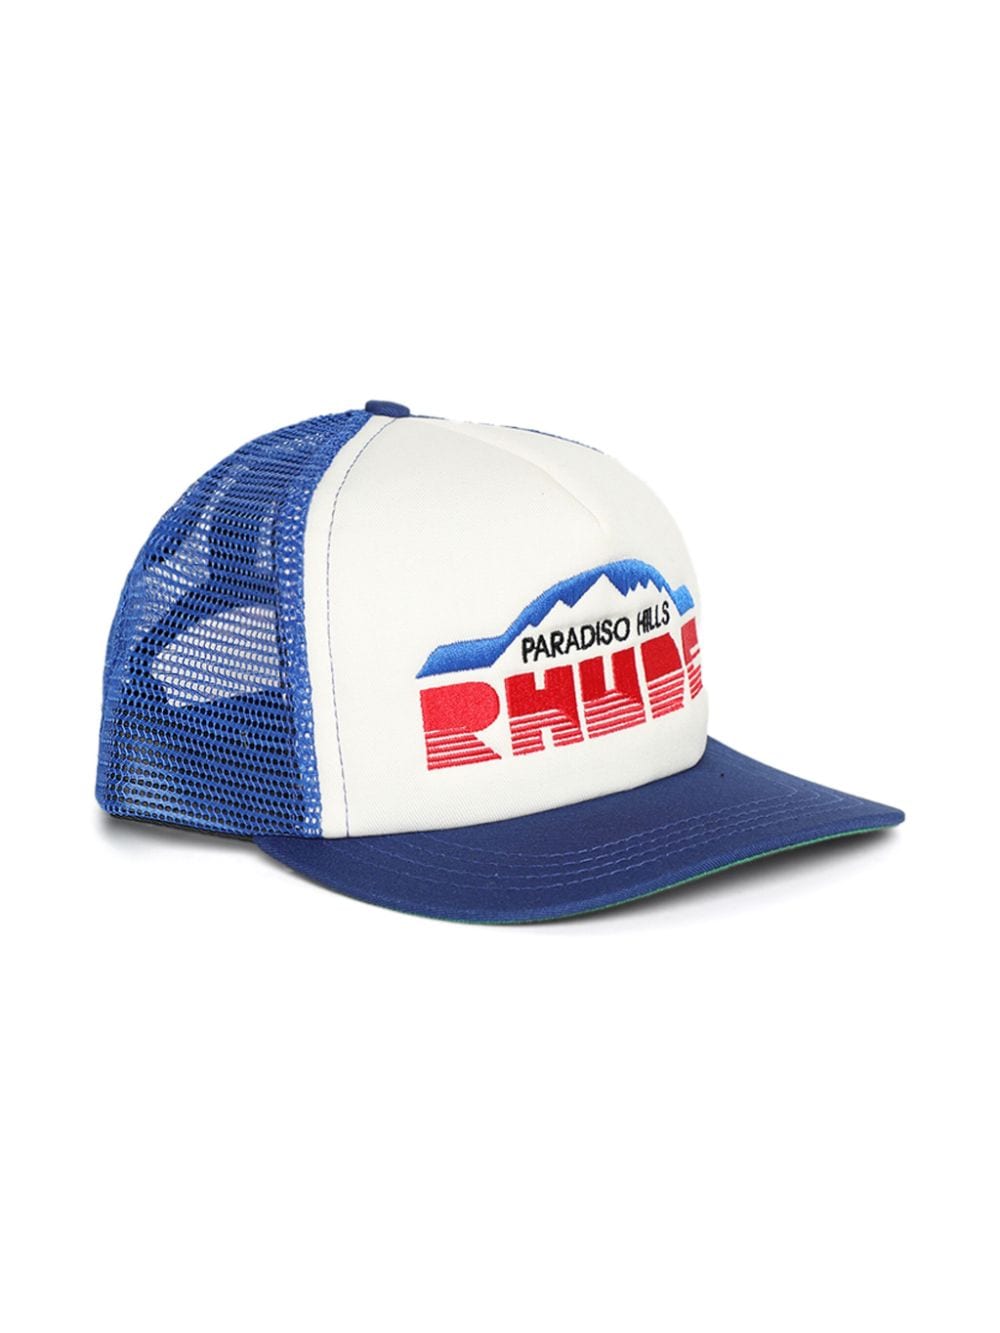 Shop Rhude Paradiso Hills Trucker Hat In Blue